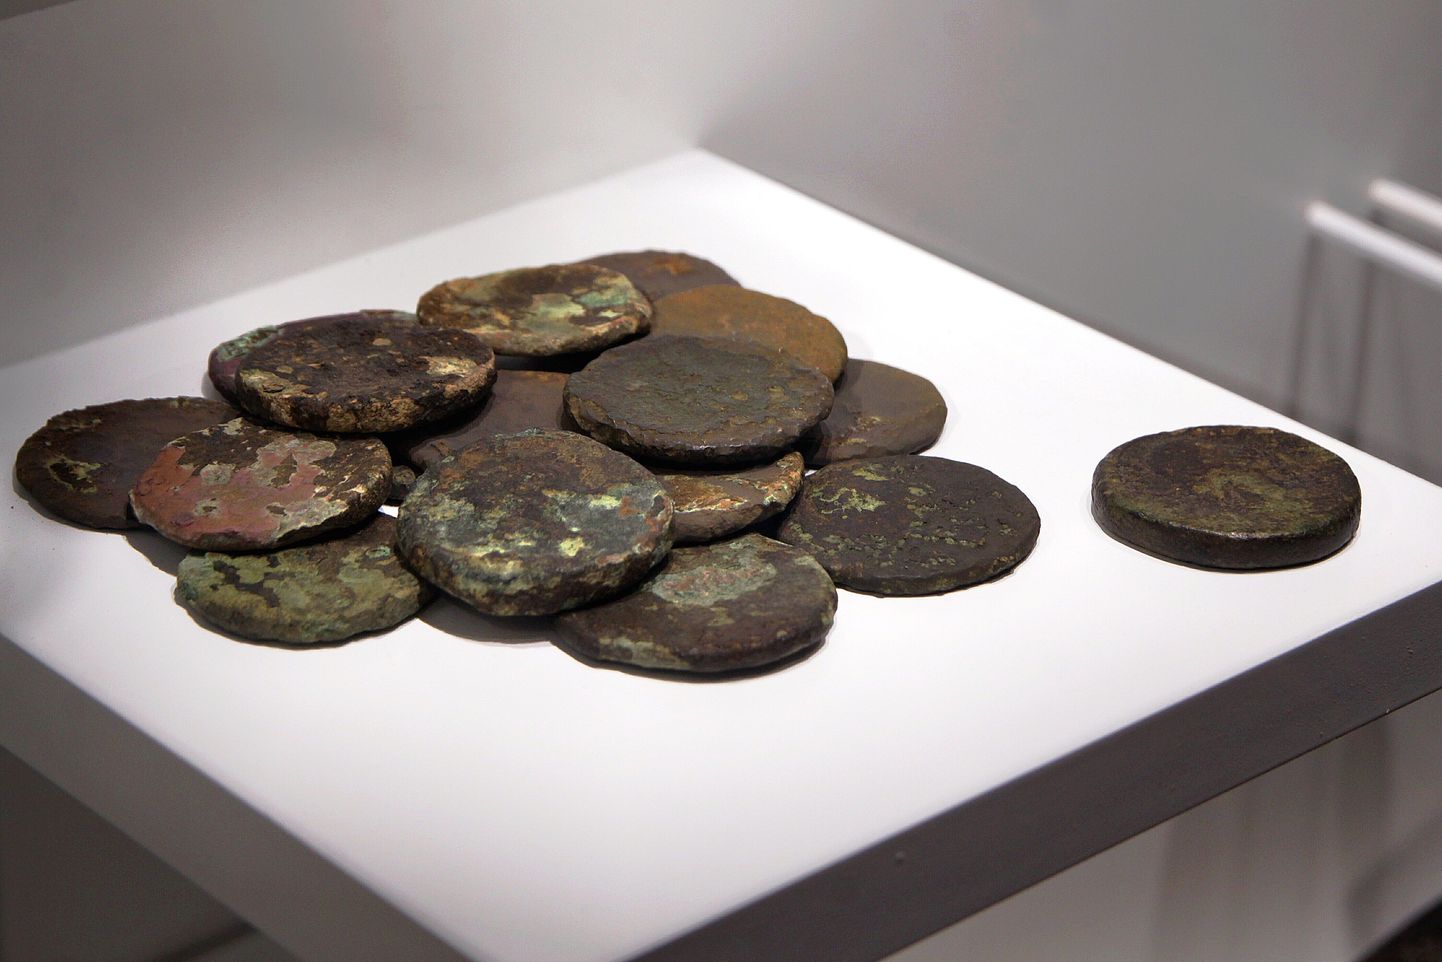 15 mündist koosnev peiteleid Pärnu muuseumis. Pilt on illustratiivne.